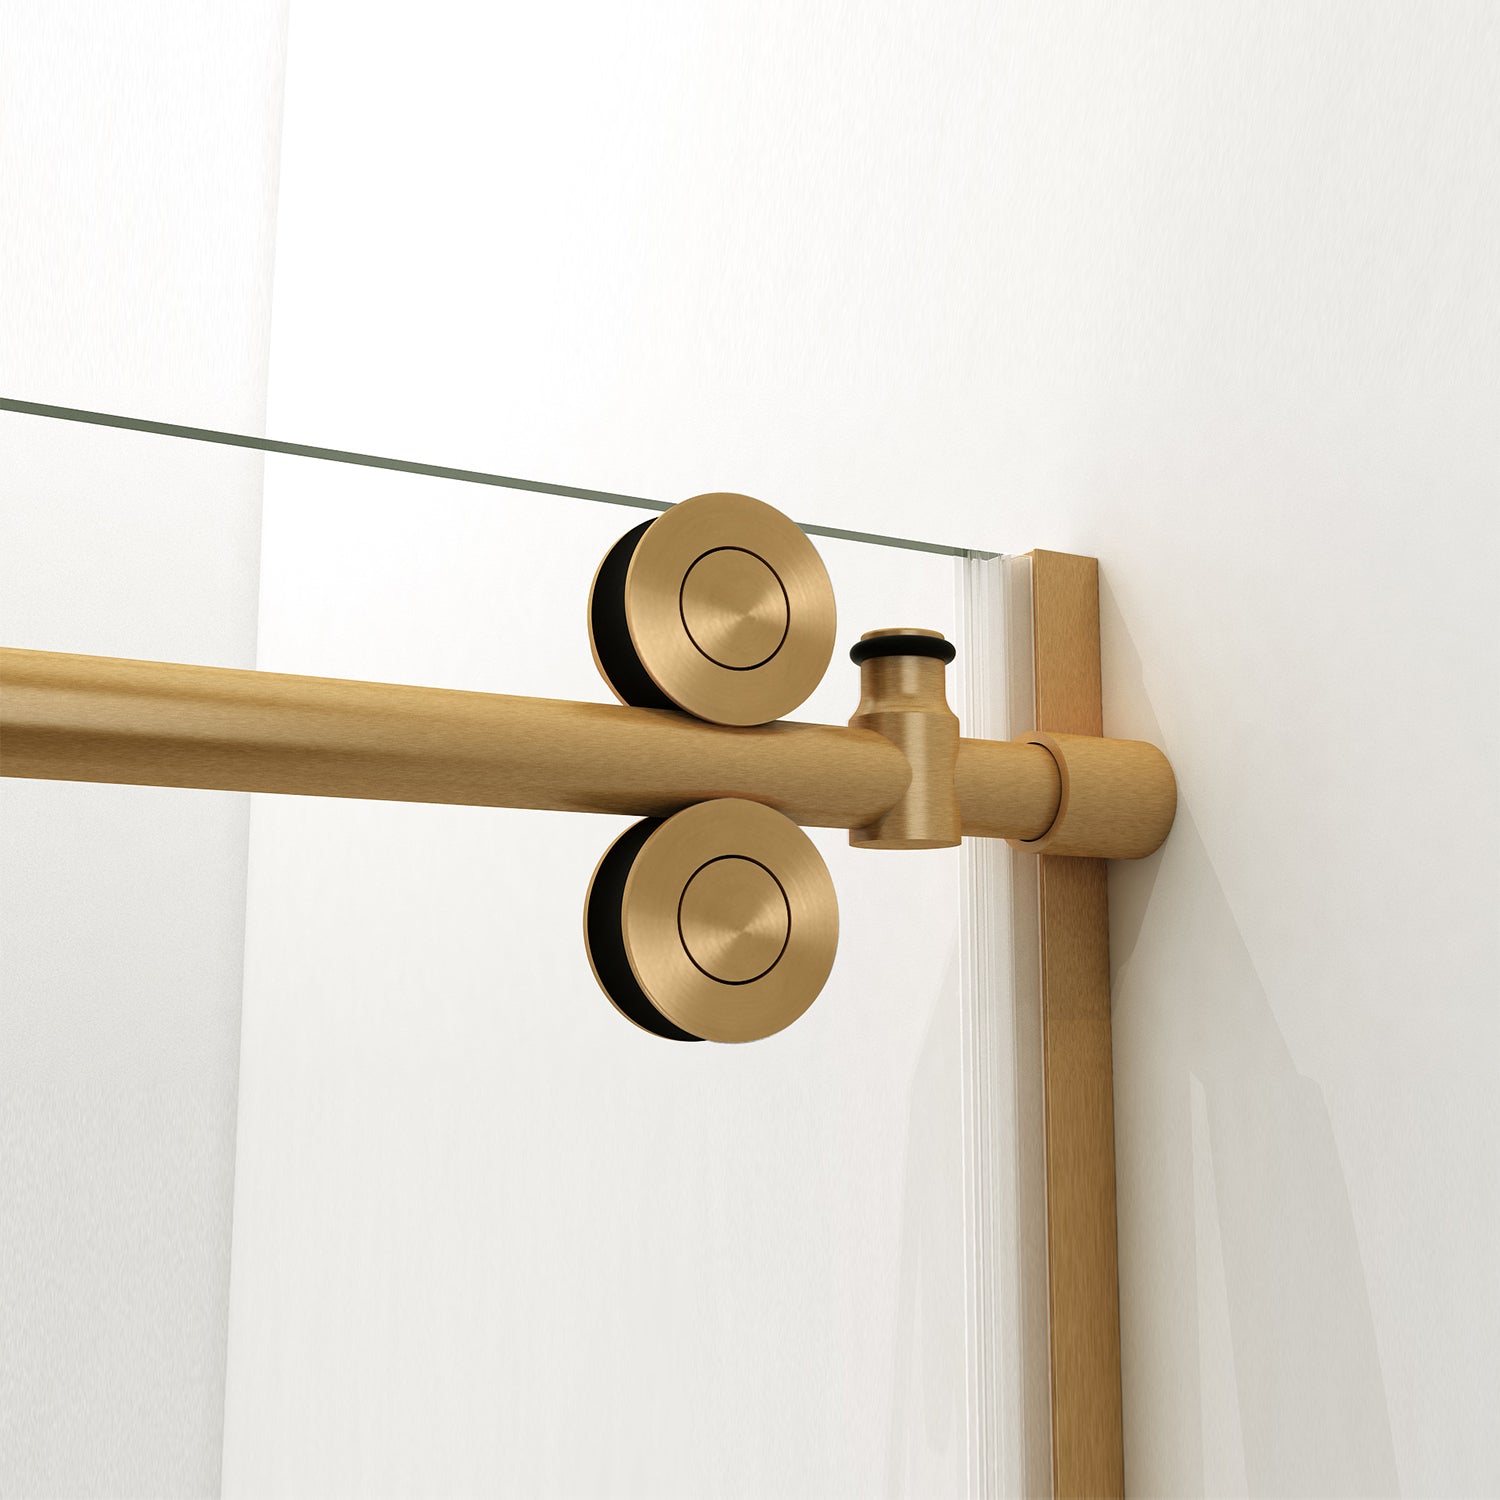 Vinnova Massa Single Sliding Frameless Shower Door in Brushed Gold